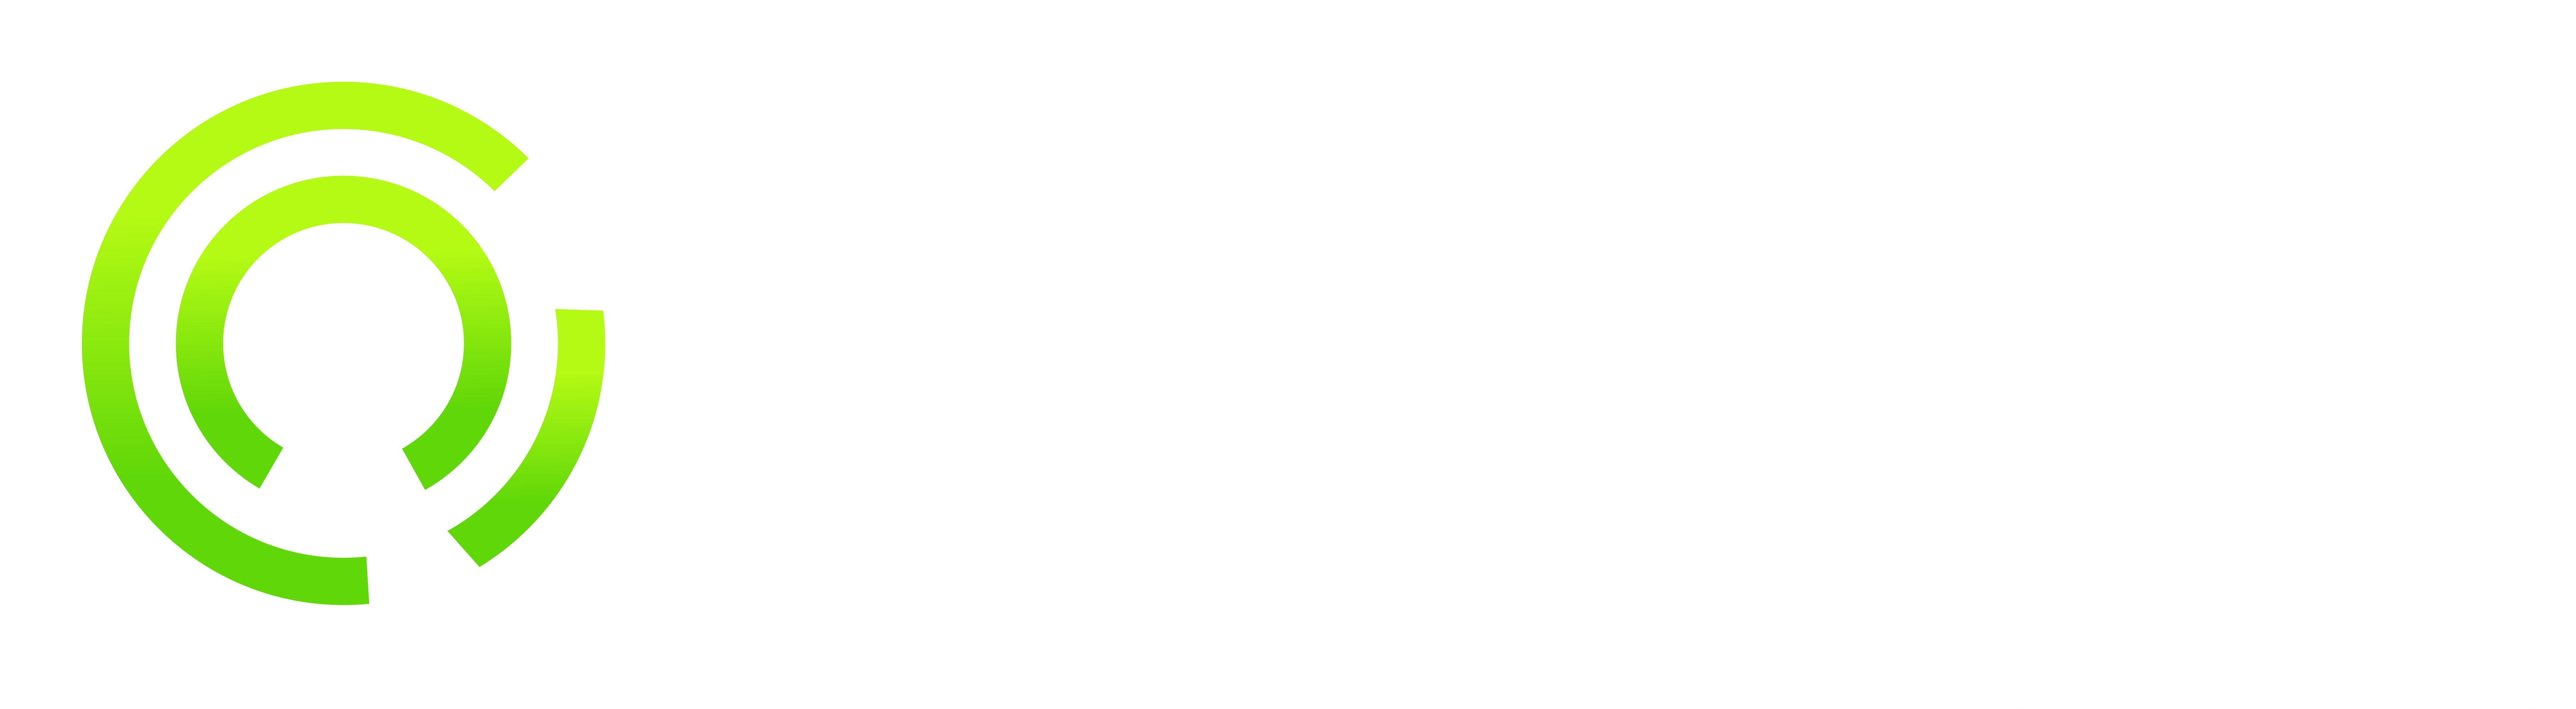 Image Advertising logo